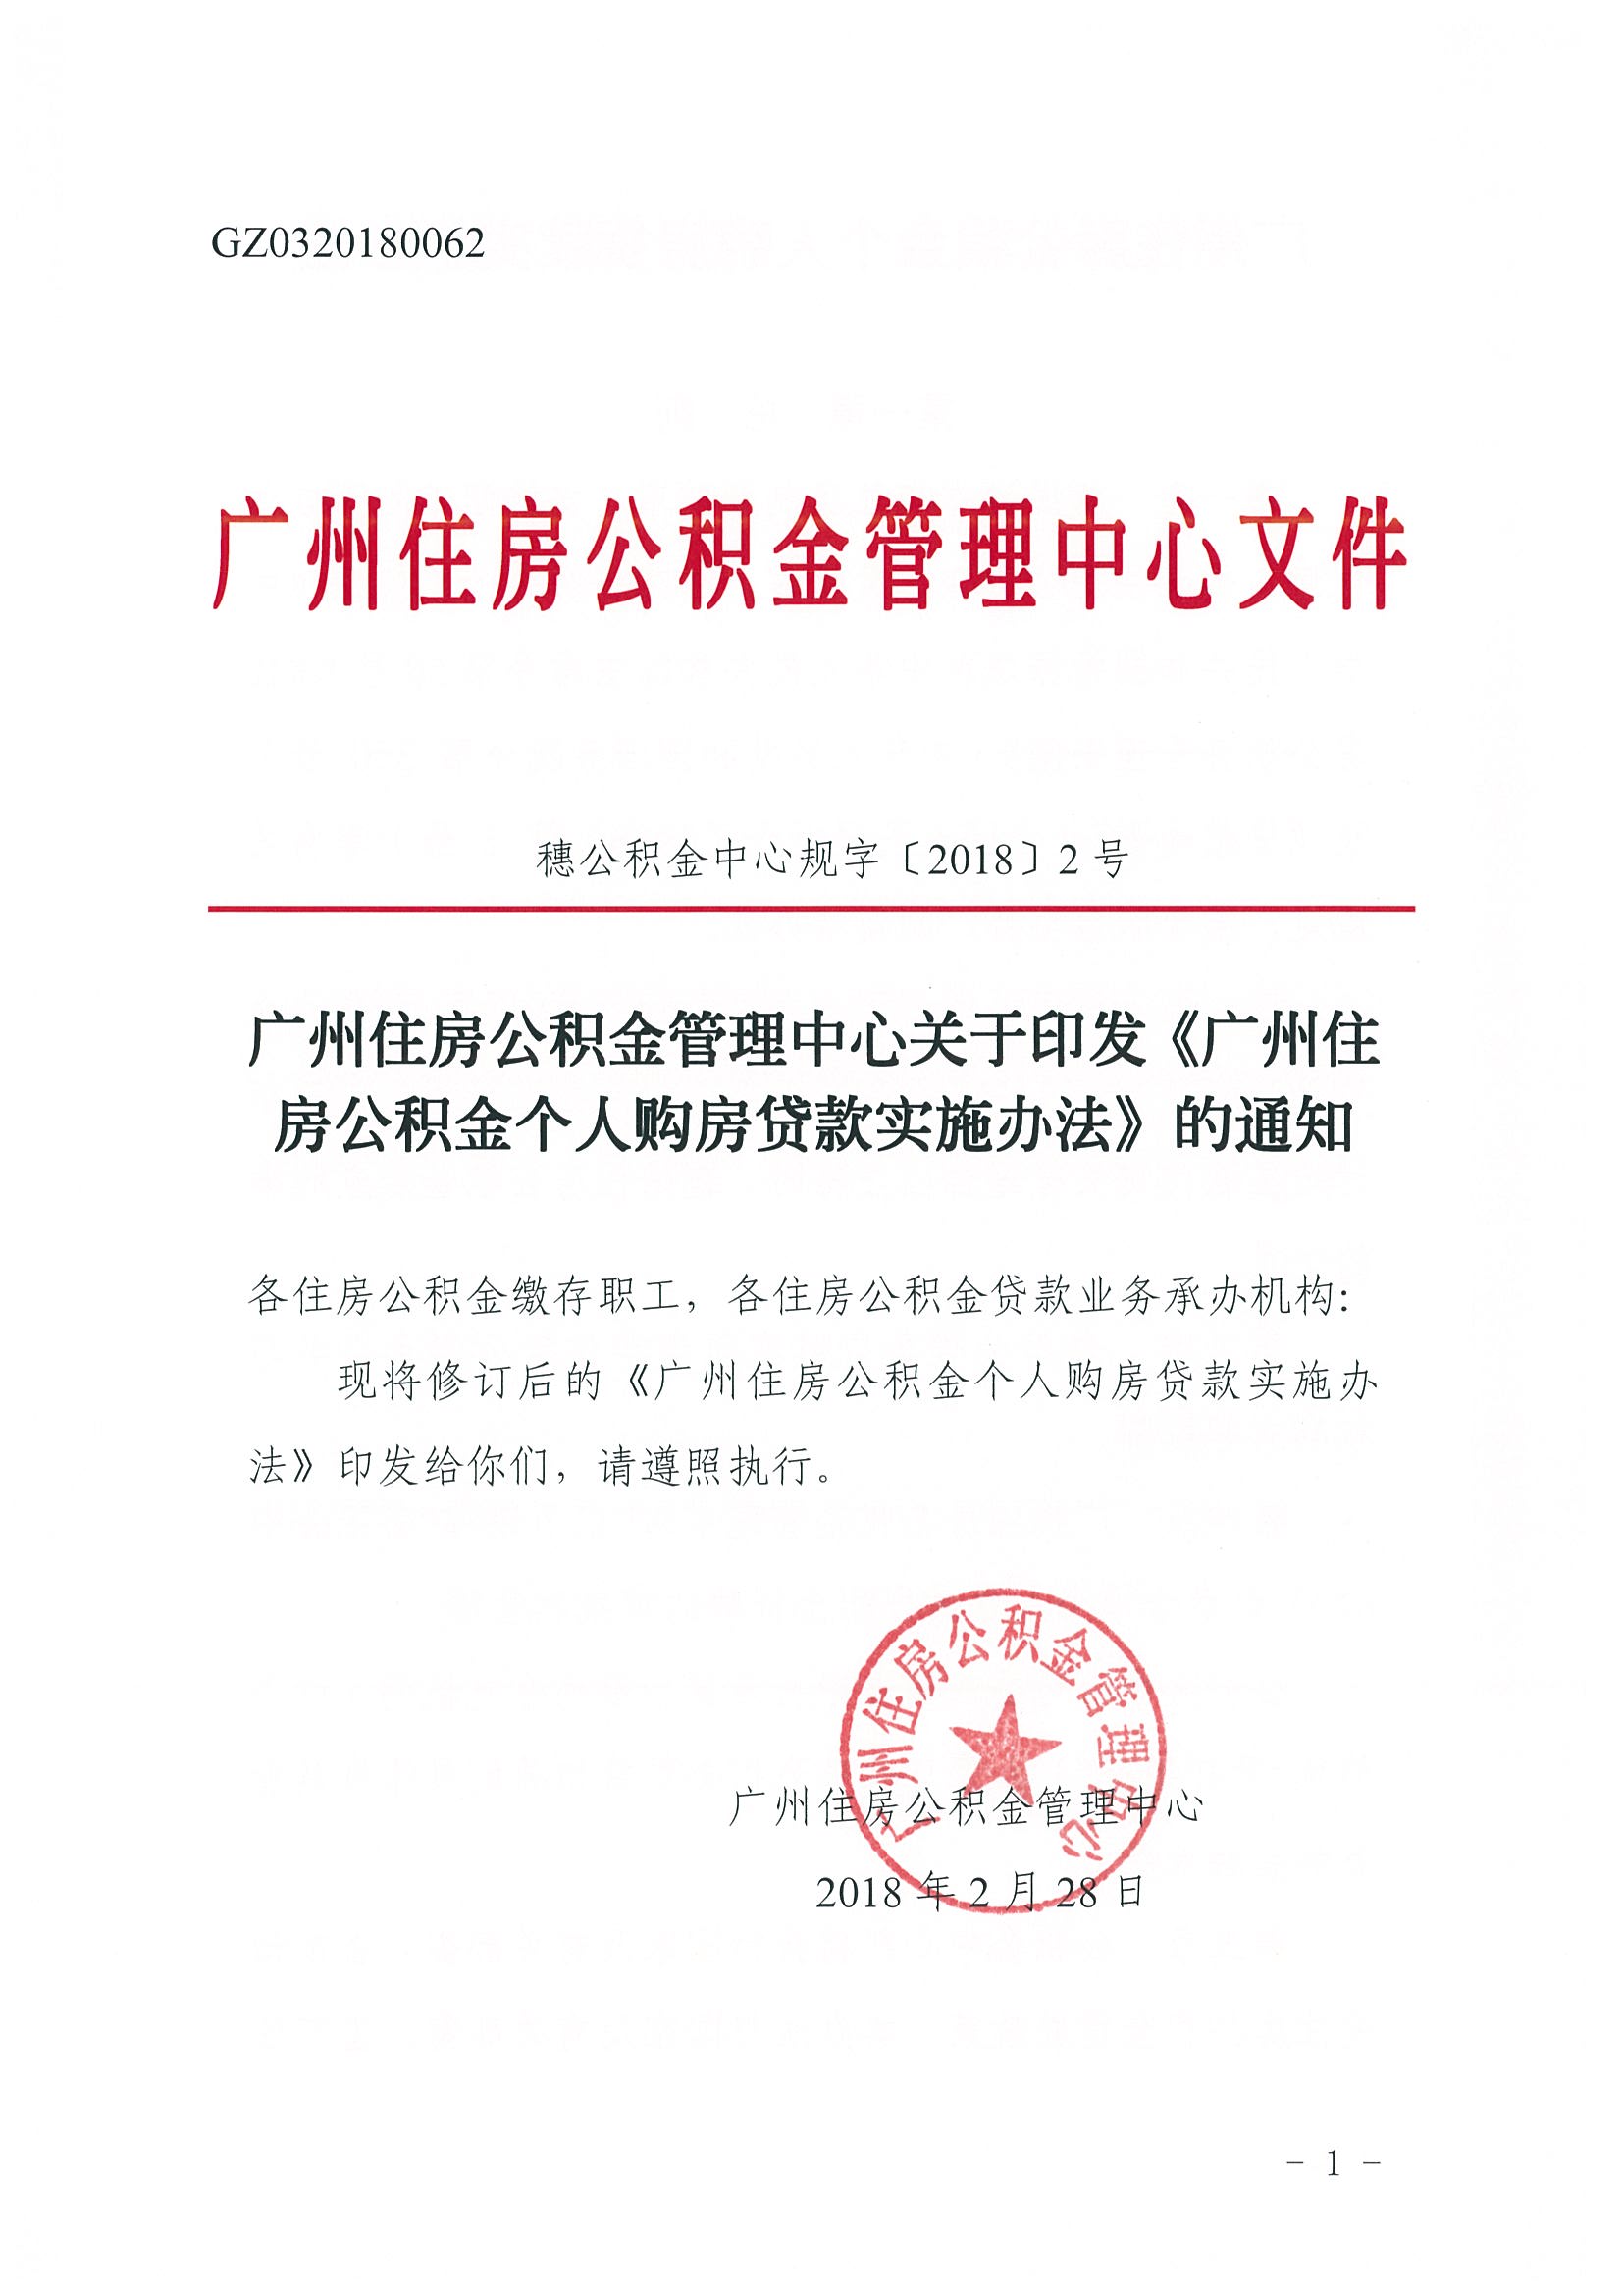 广州住房公积金管理中心关于印发《广州住房公